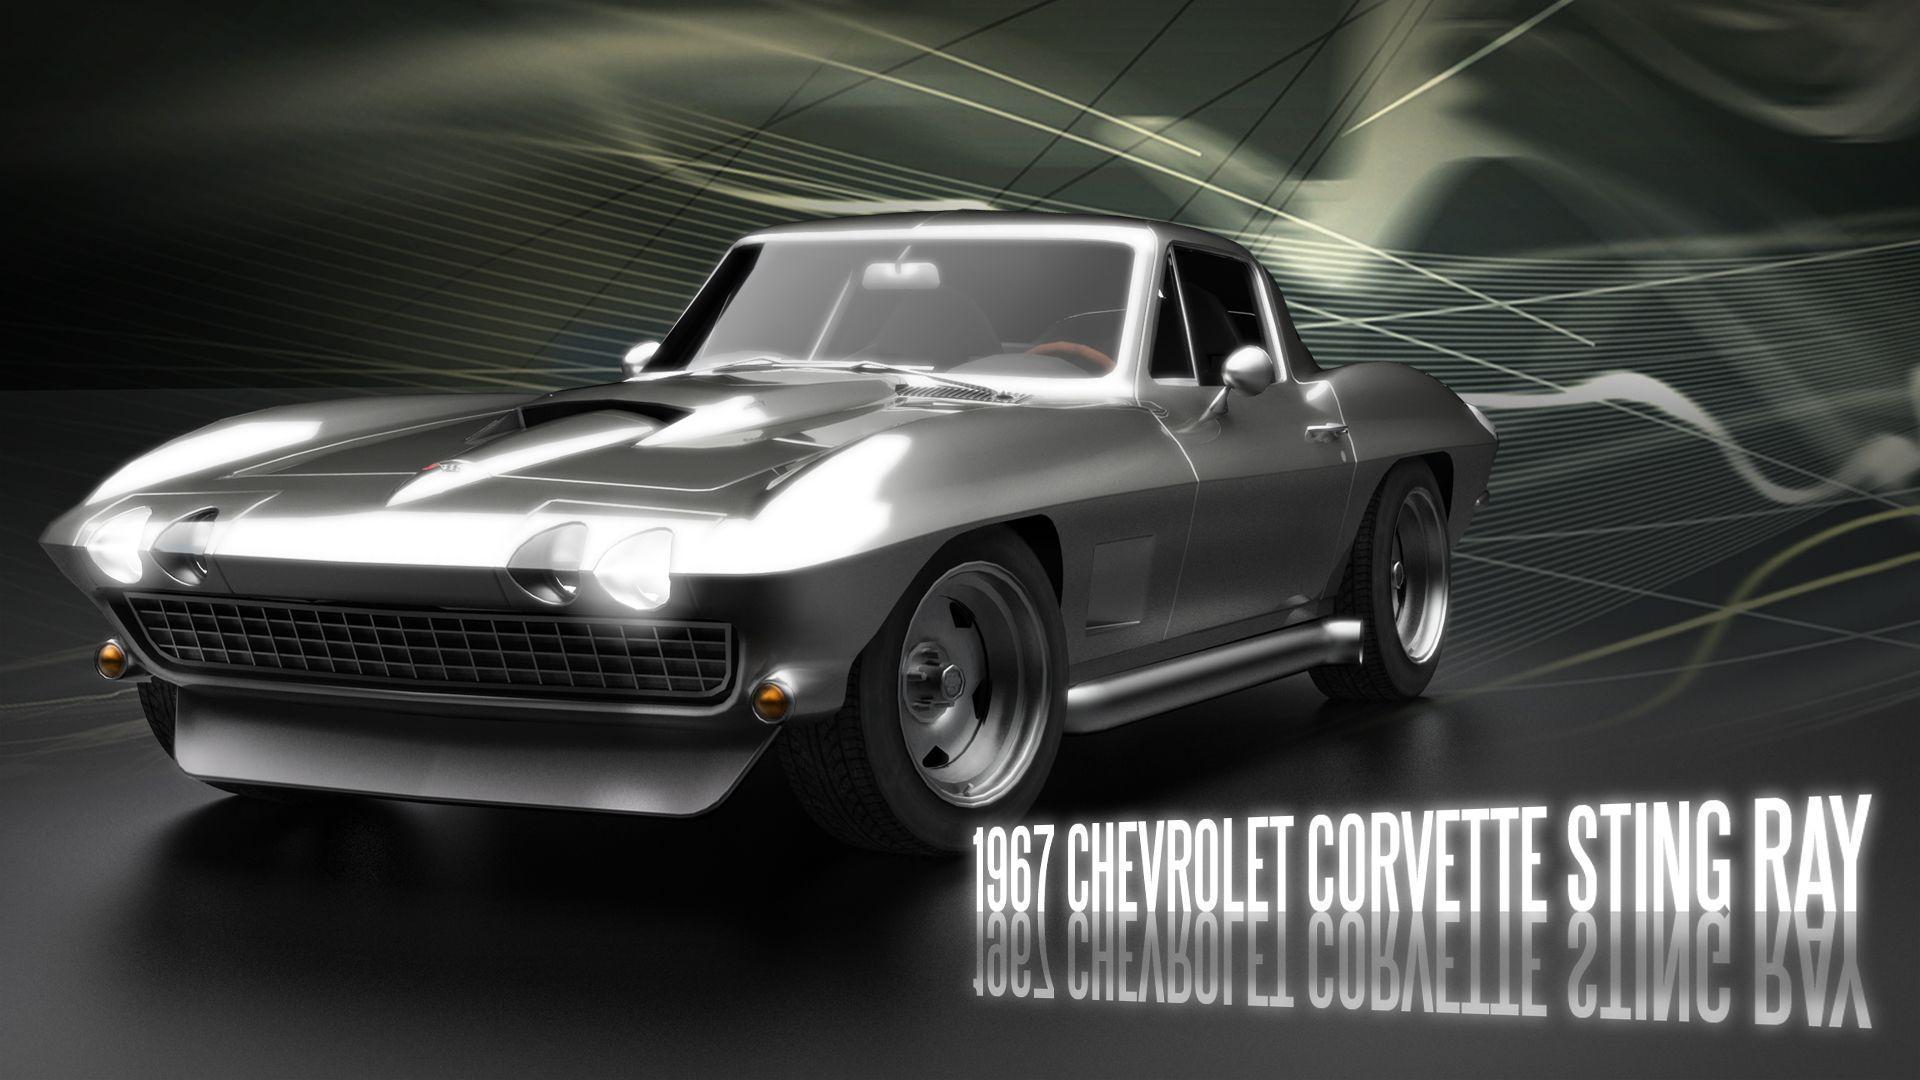 Corvette Stingray wallpaper. Corvette Stingray wallpaper